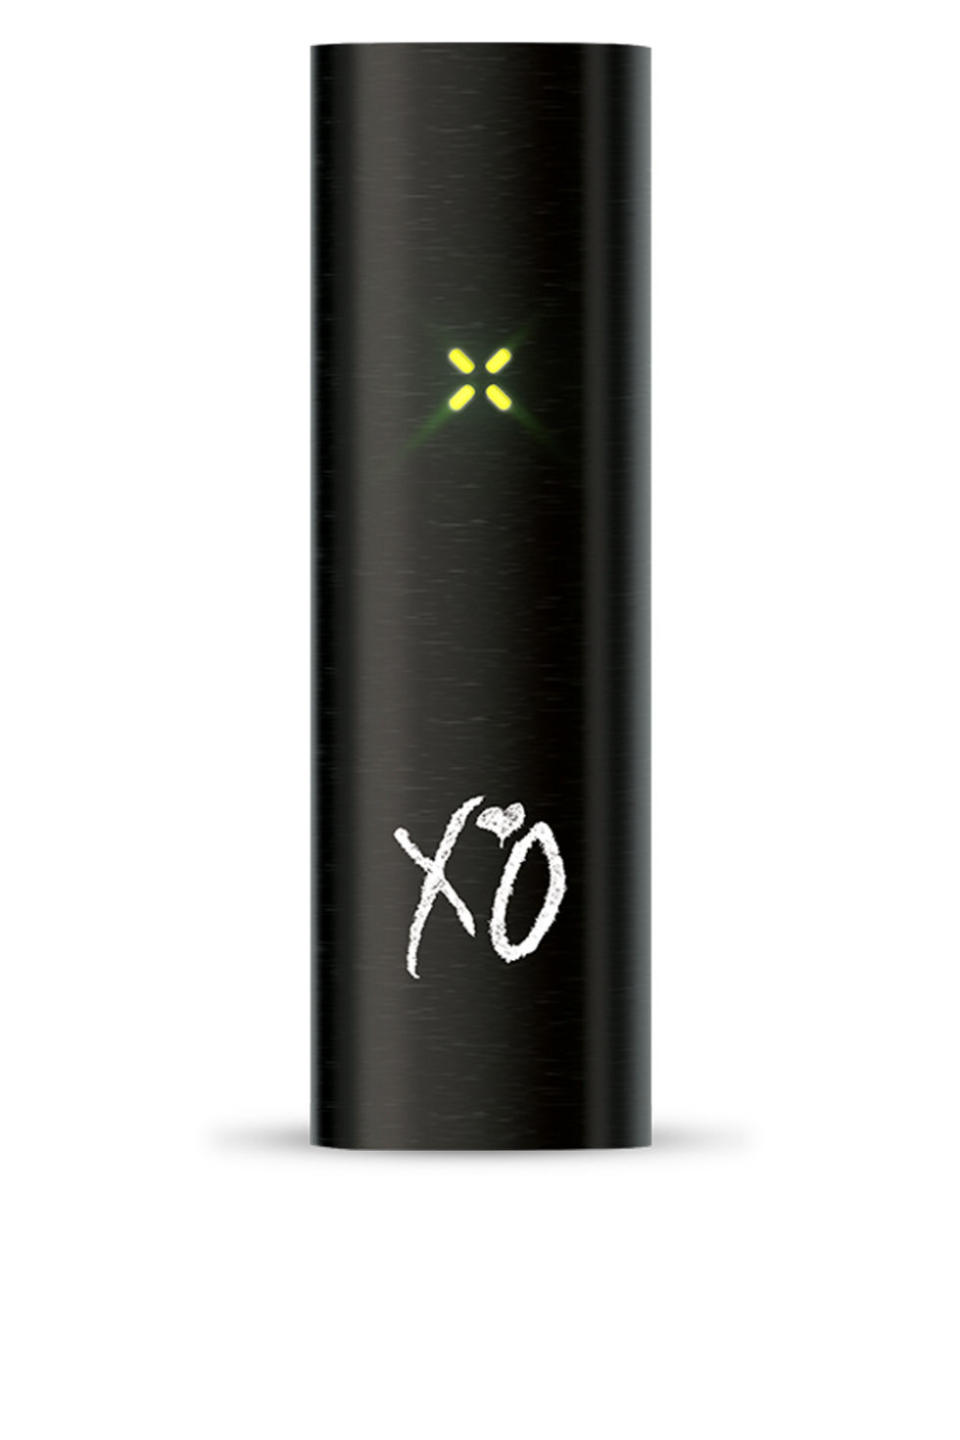 The Weeknd's Pax 2 Vaporizer